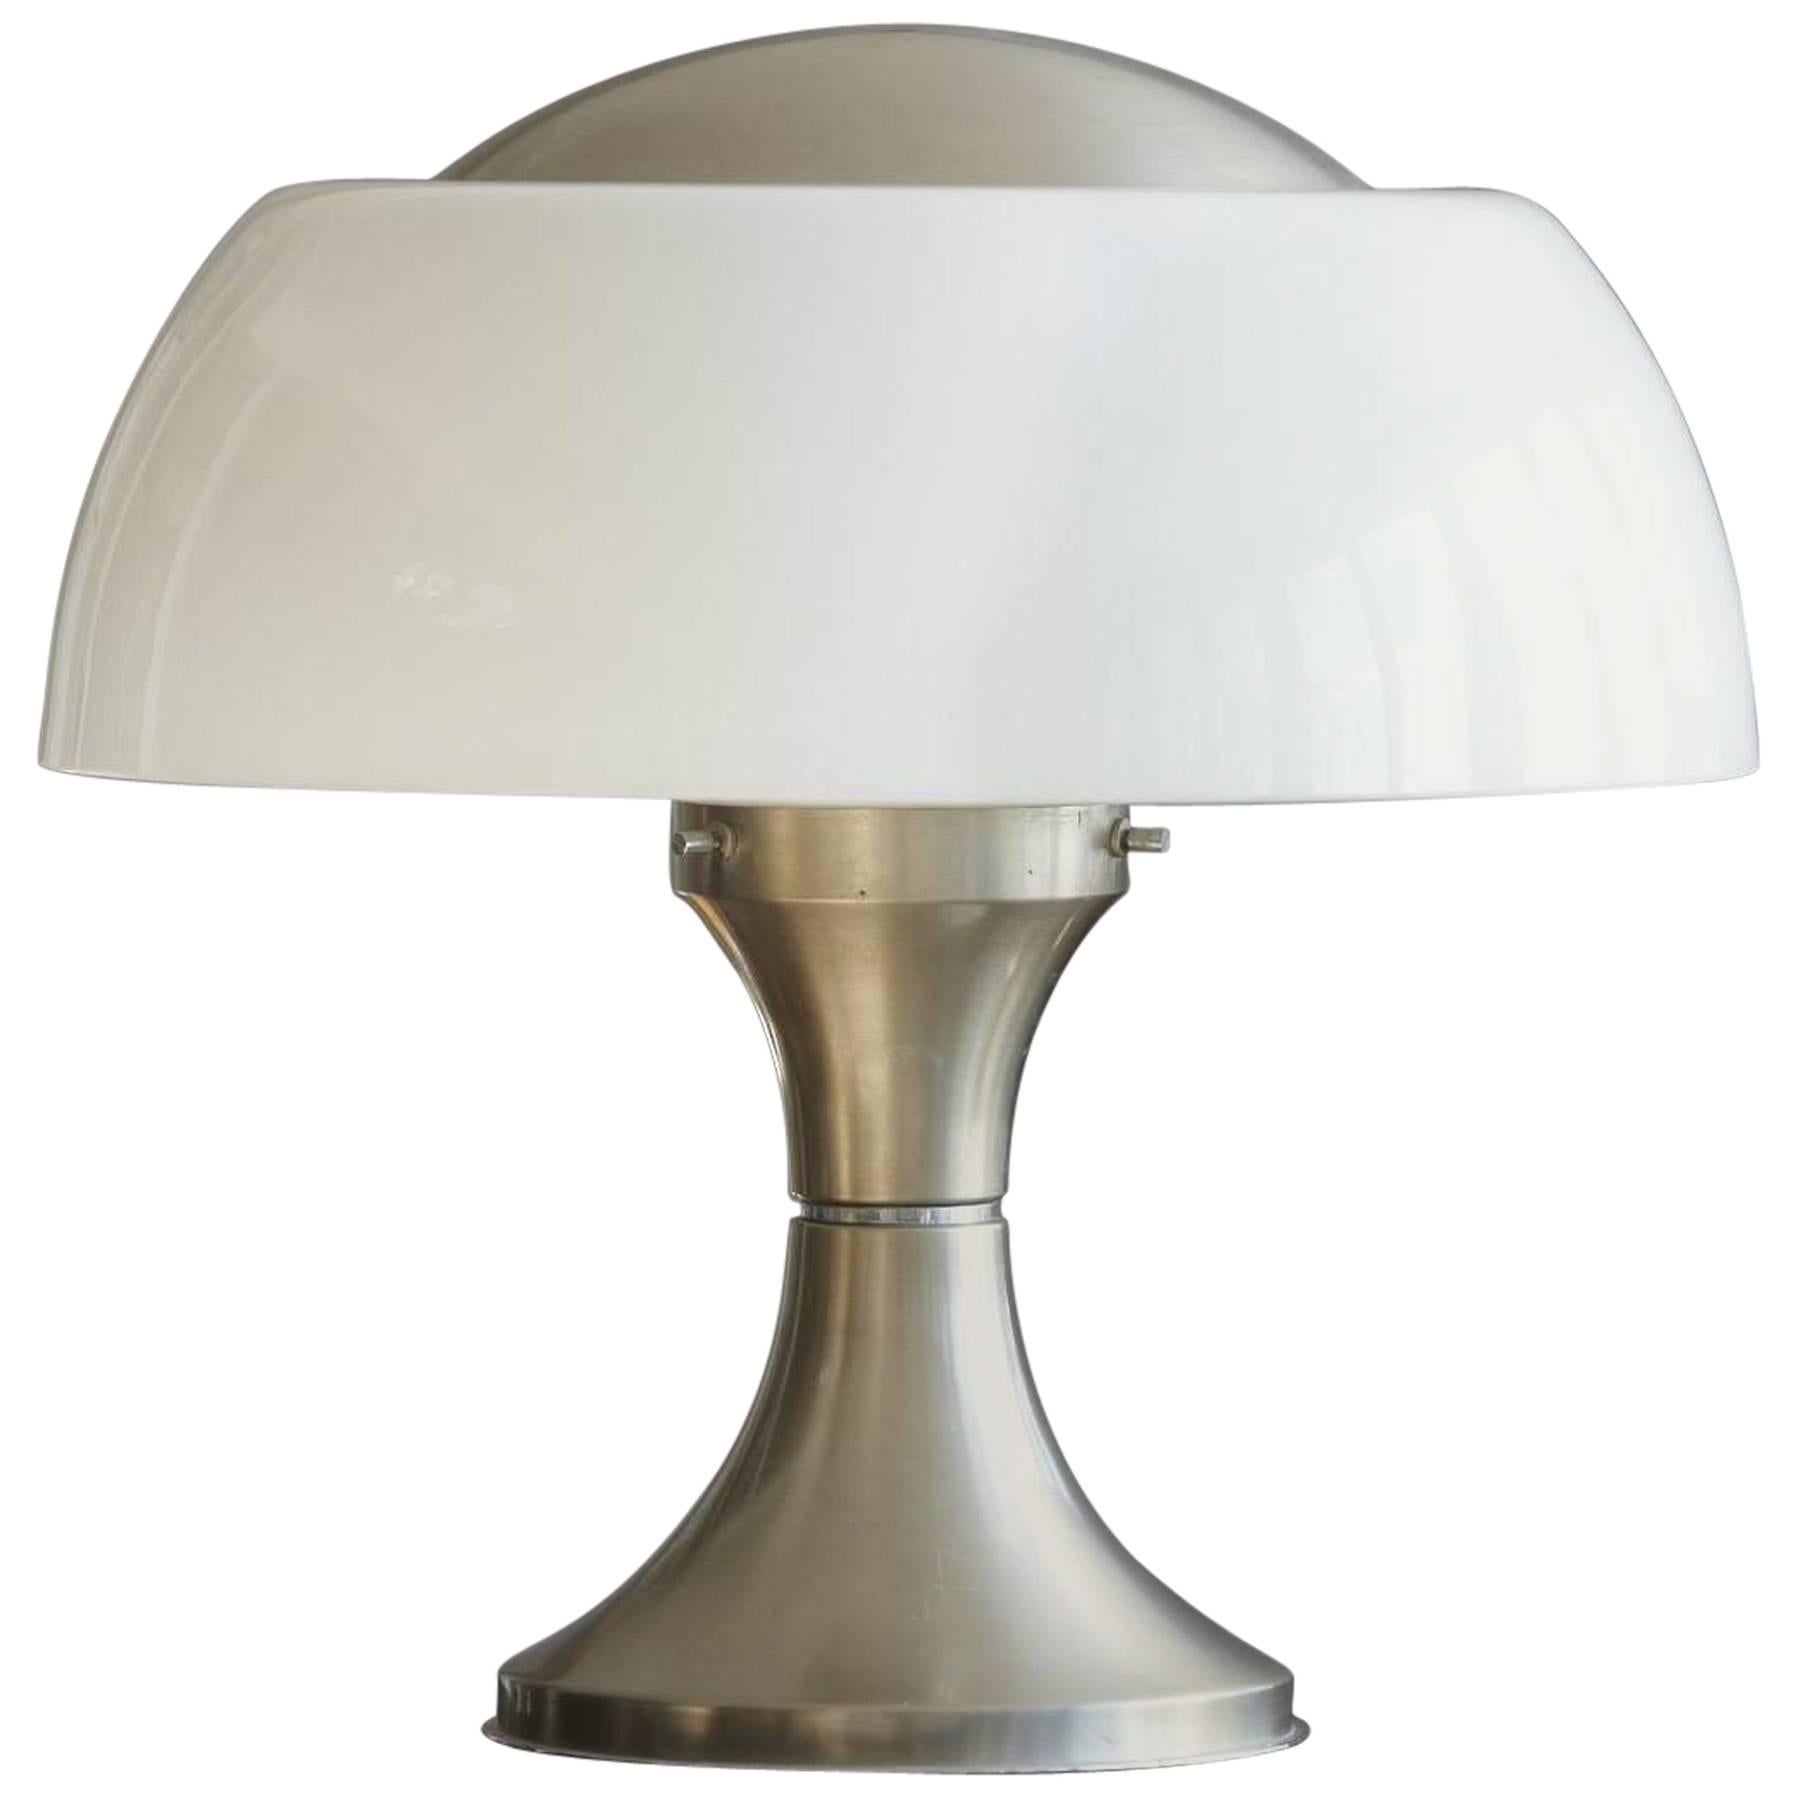 Gaetano Sciolari Table Lamp "Home" for Ecolight Formerly Valenti, 1968 For Sale